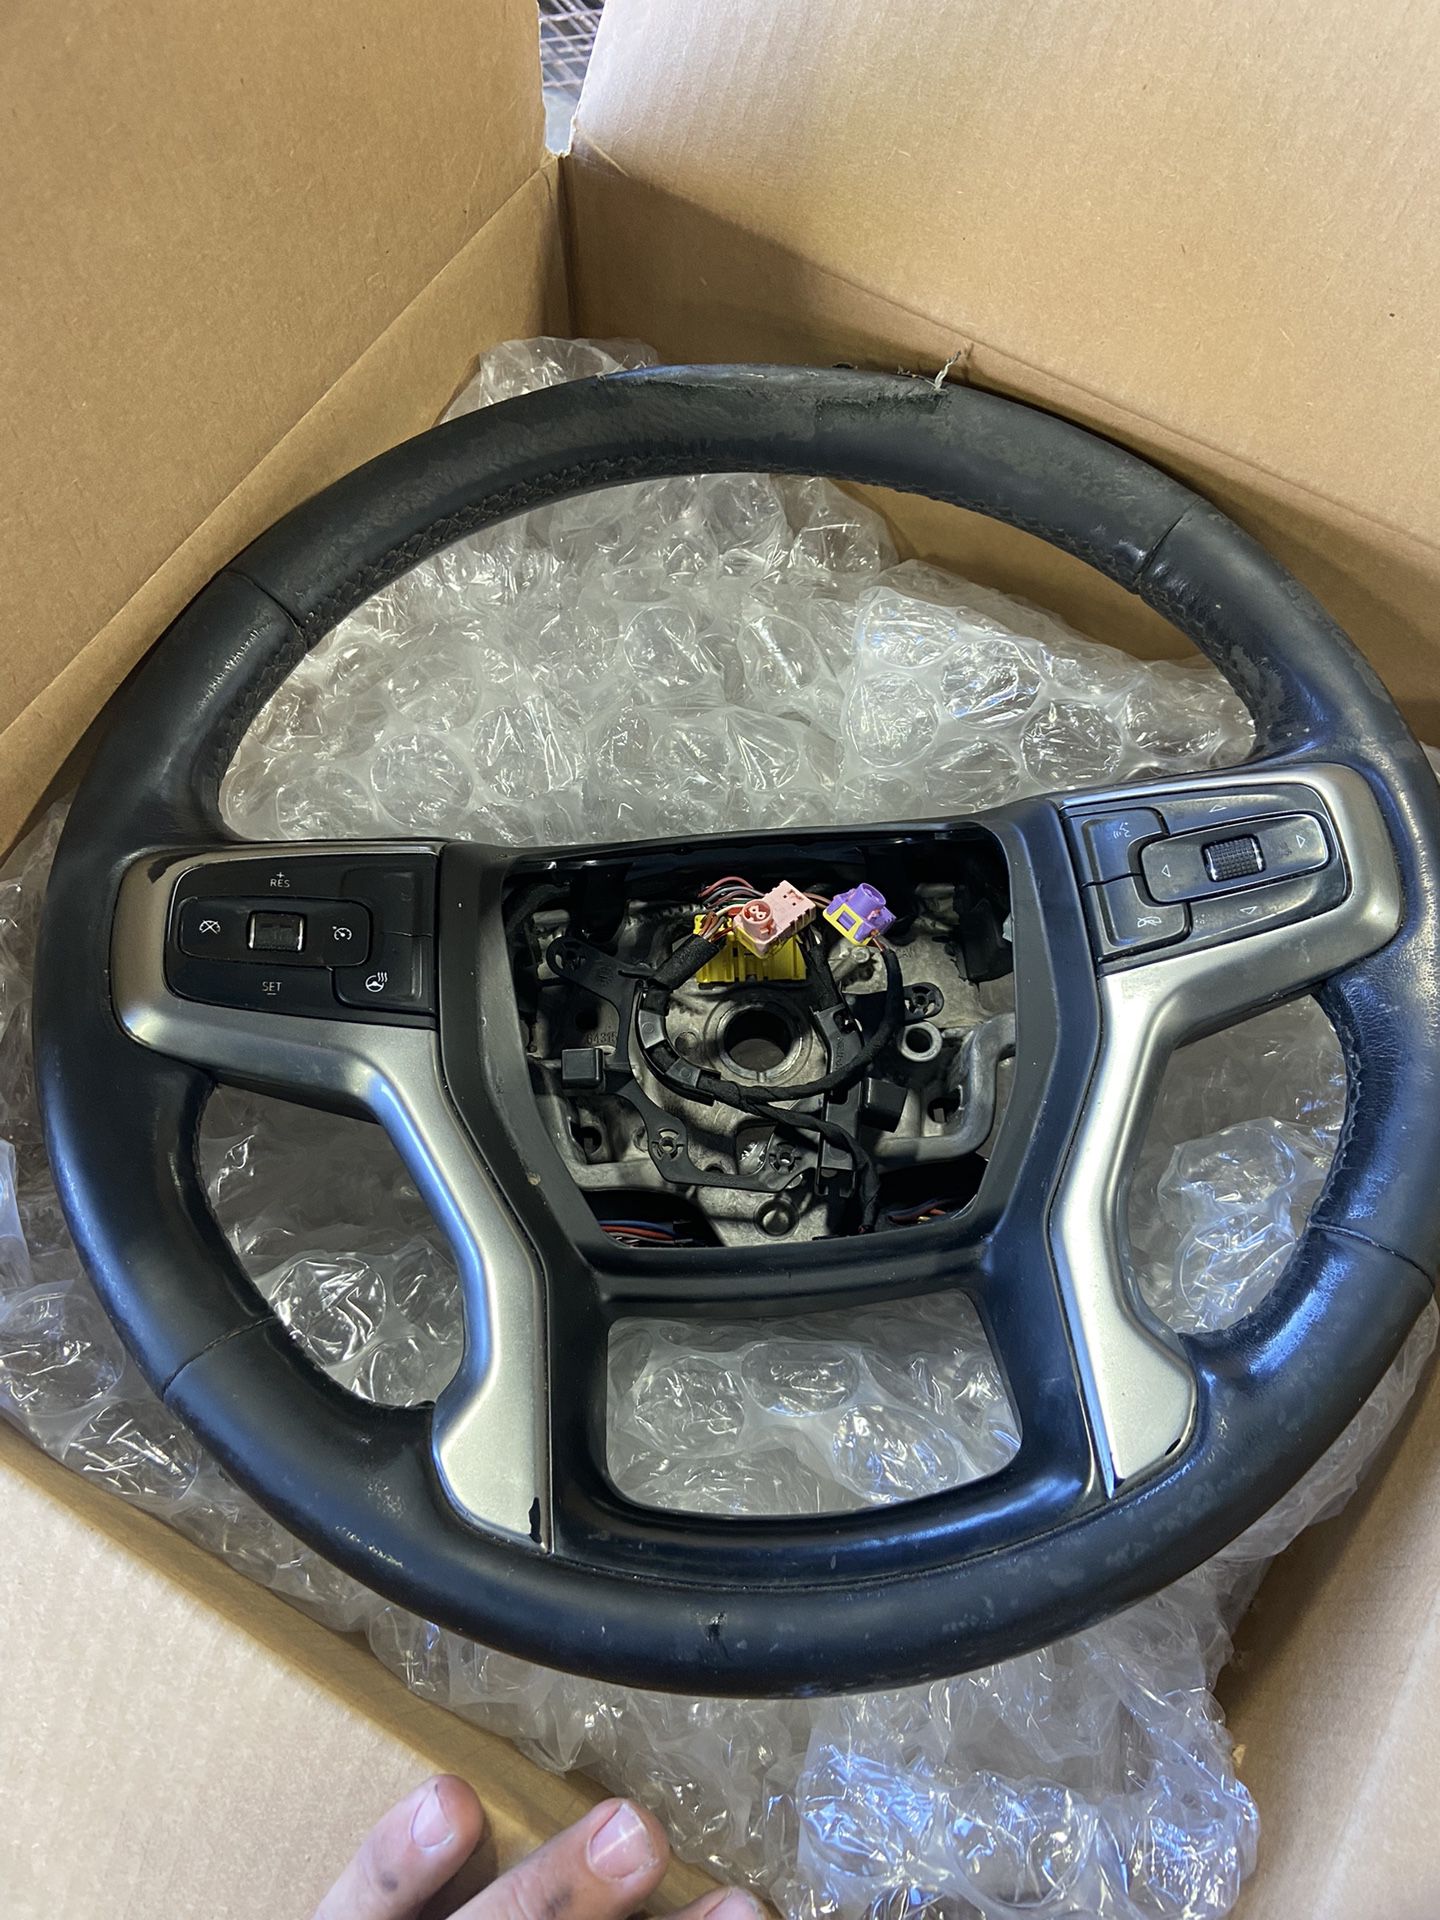 2019 Chevy Silverado Steering Wheel